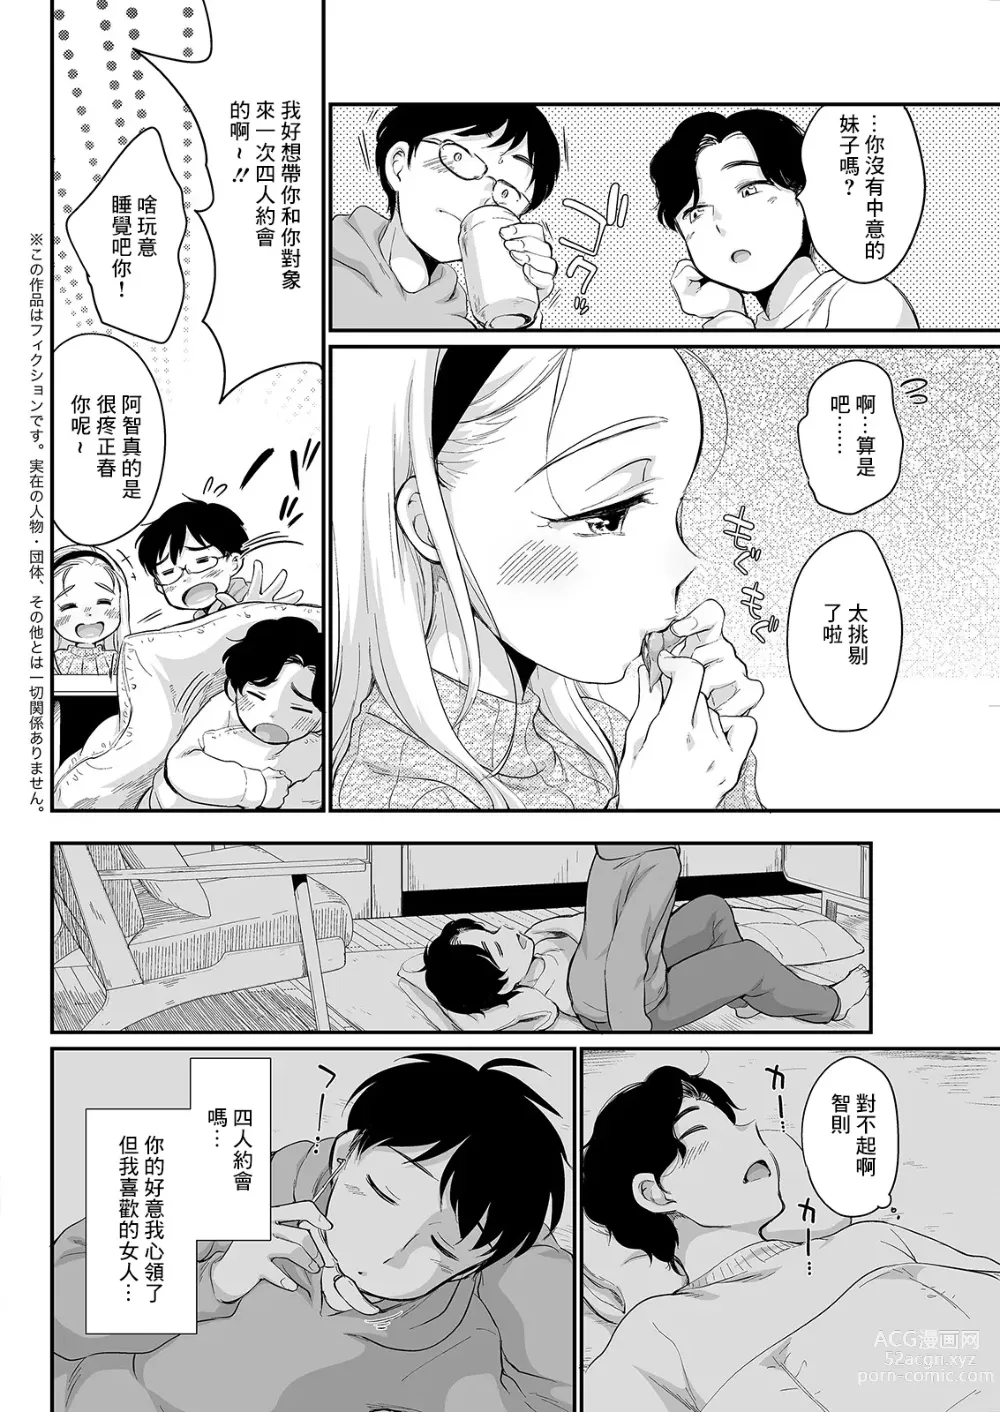 Page 2 of manga Kanchigai